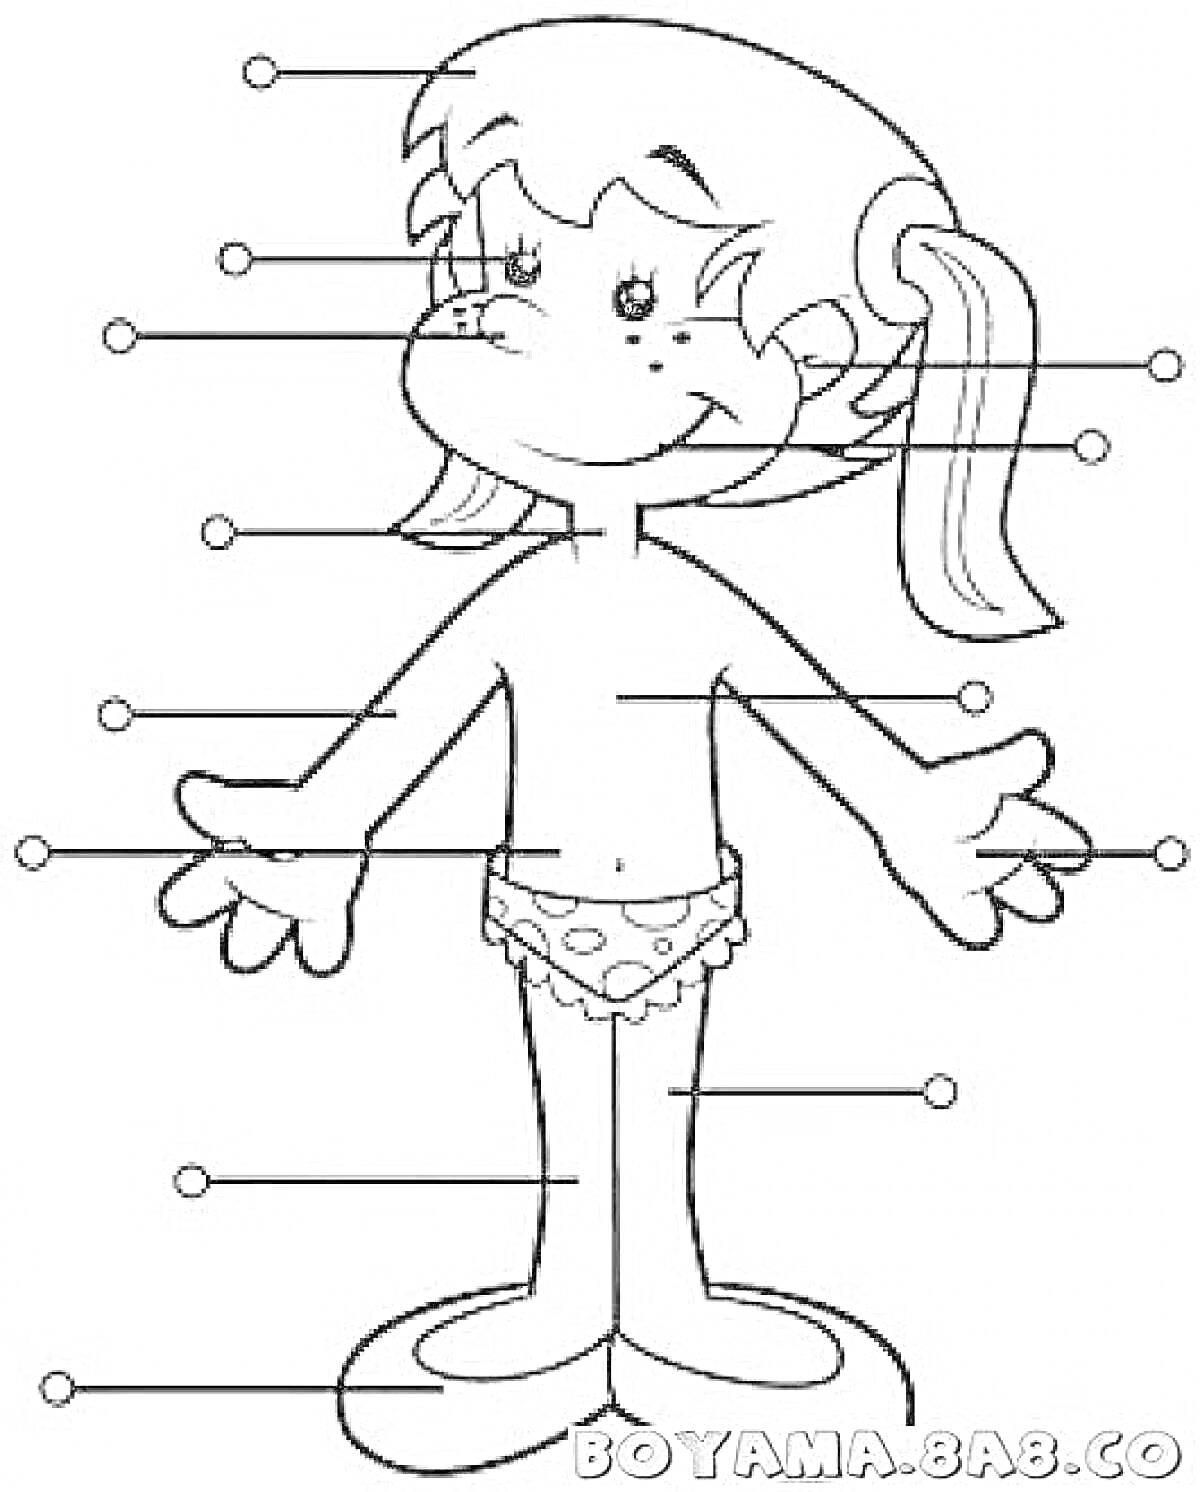 Раскраска Человеческое тело с указанием частей - голова, волосы, уши, глаза, нос, рот, шея, плечи, руки, локти, кисти, пальцы, грудь, живот, ноги, колени, стопы